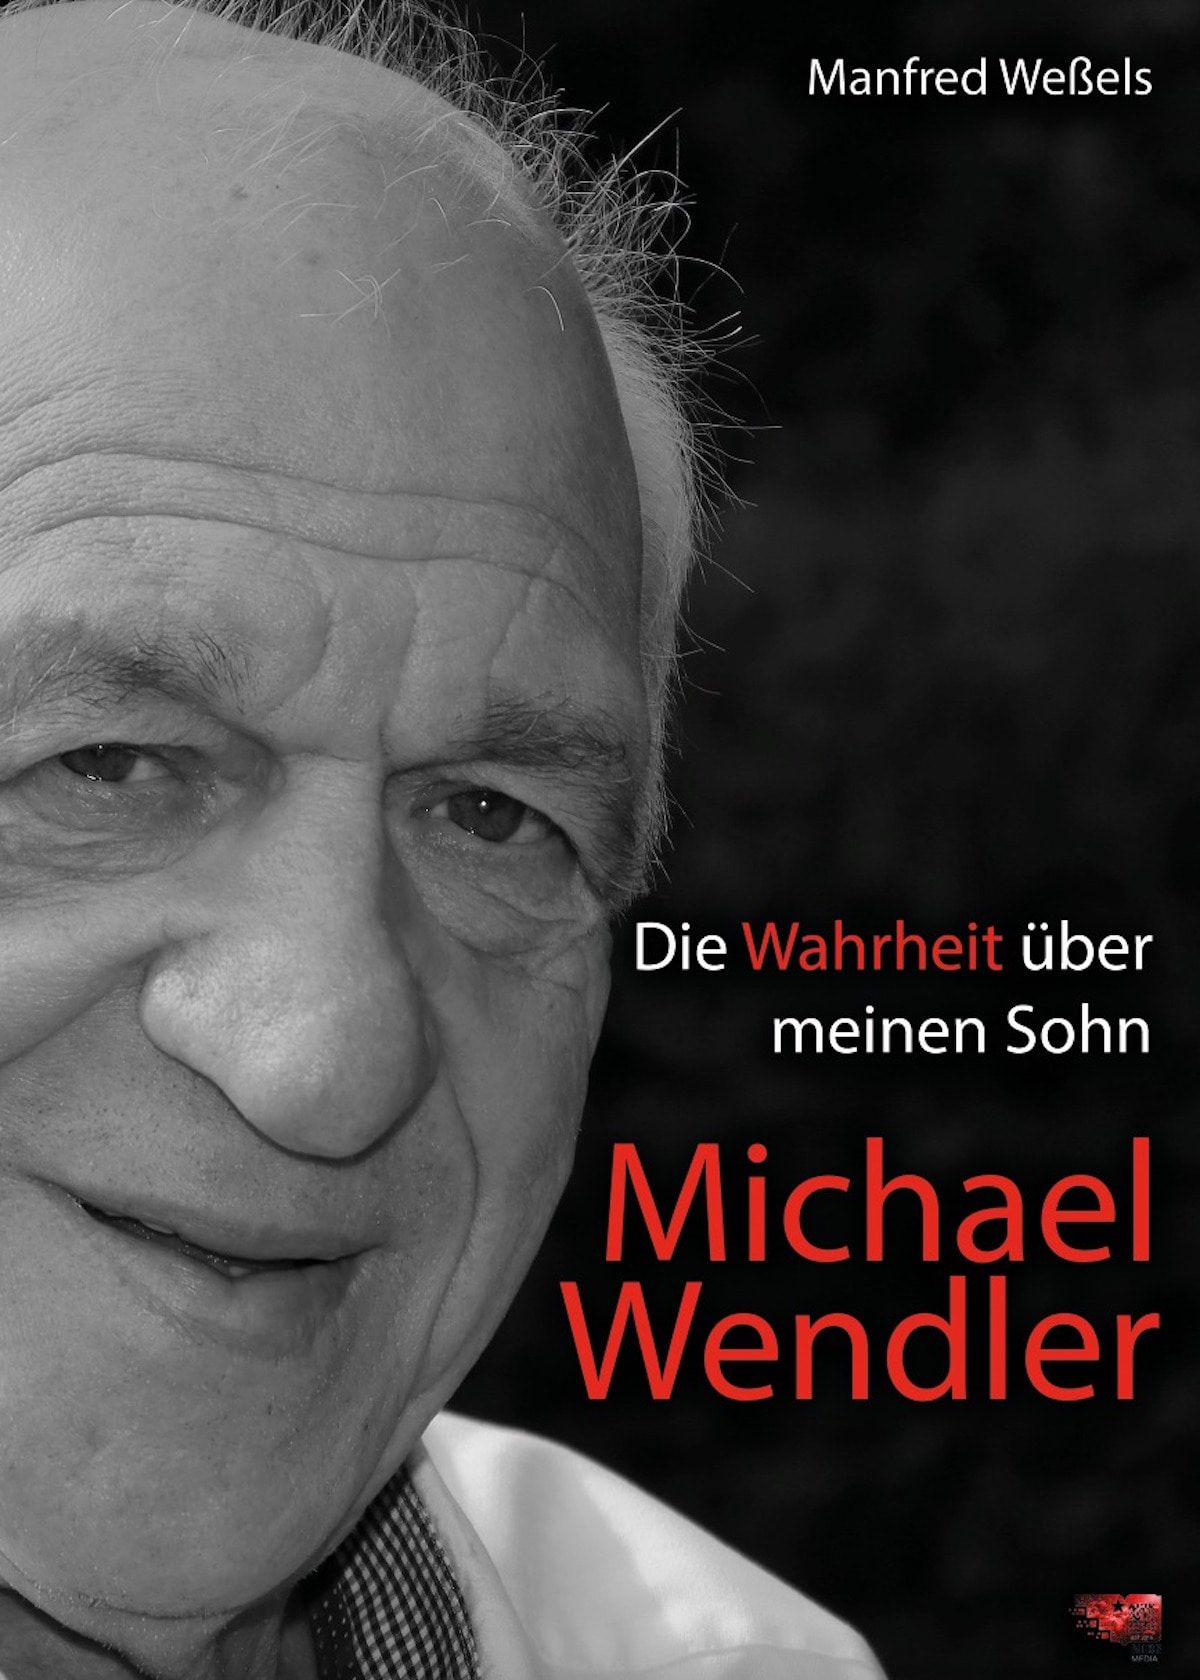 Michael Wendlers Vater packt aus: "Ich wurde von ihm gequält und gedemütigt"